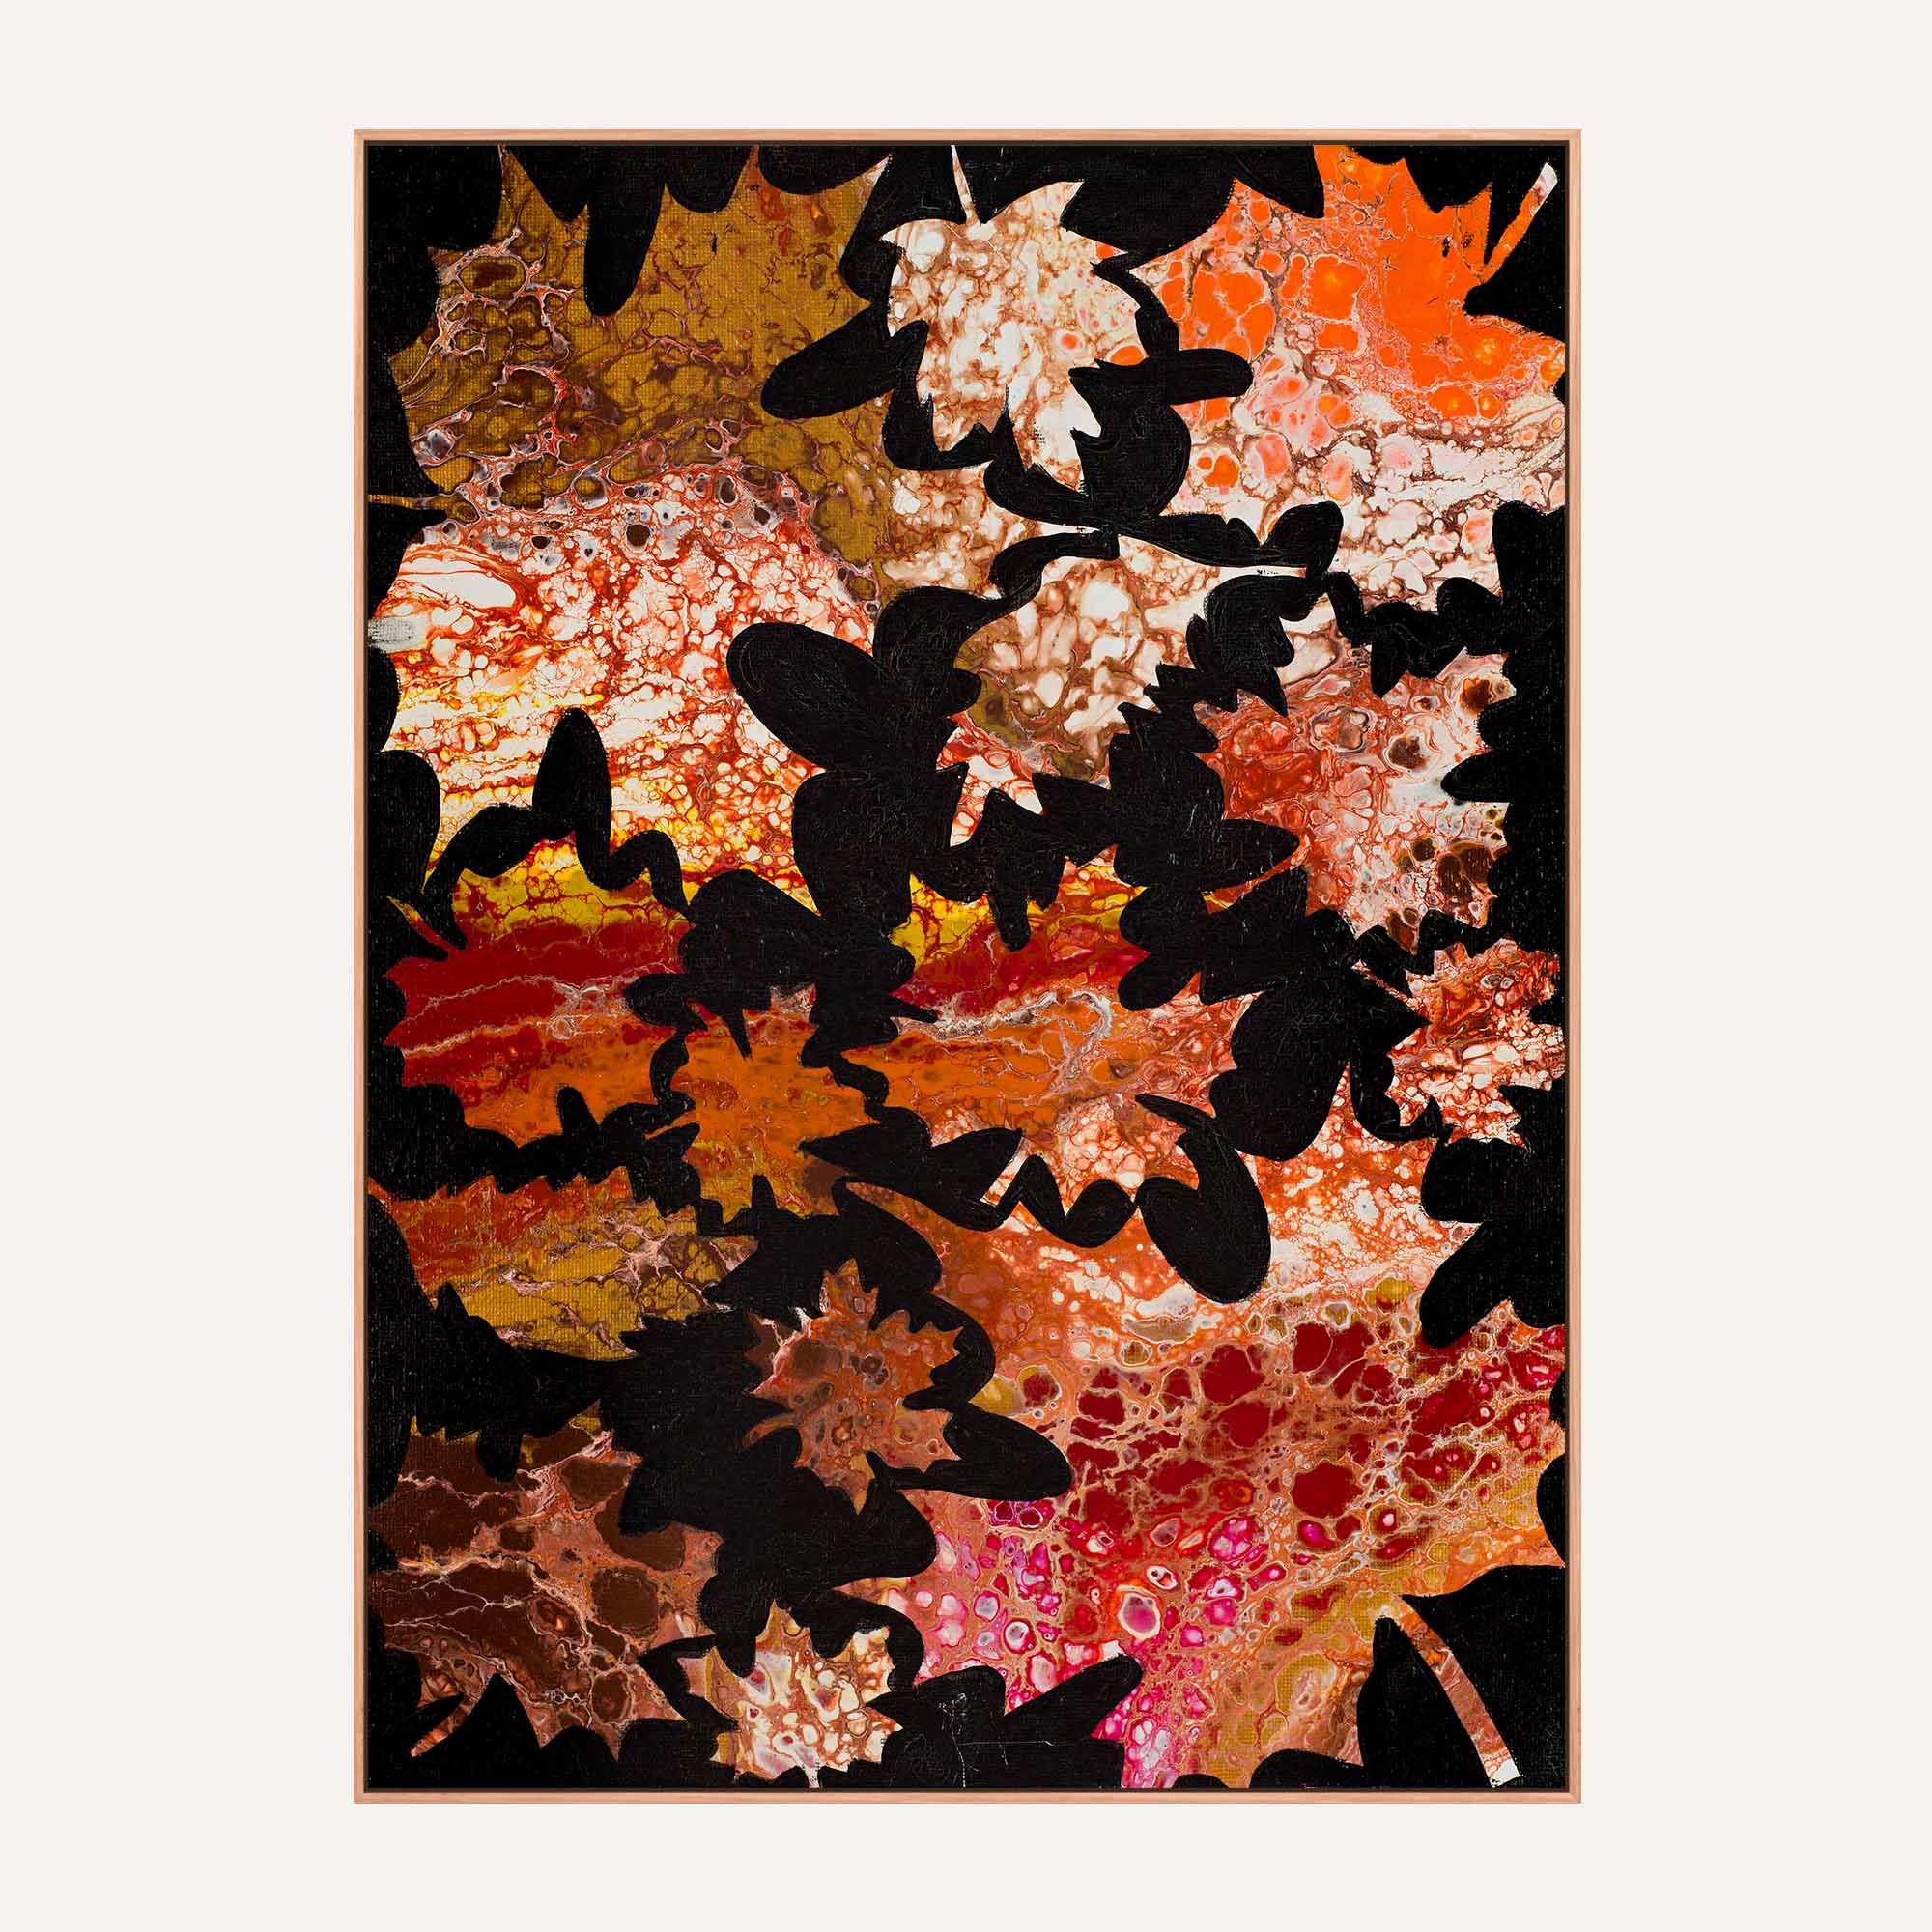 06. Autumn Leaves